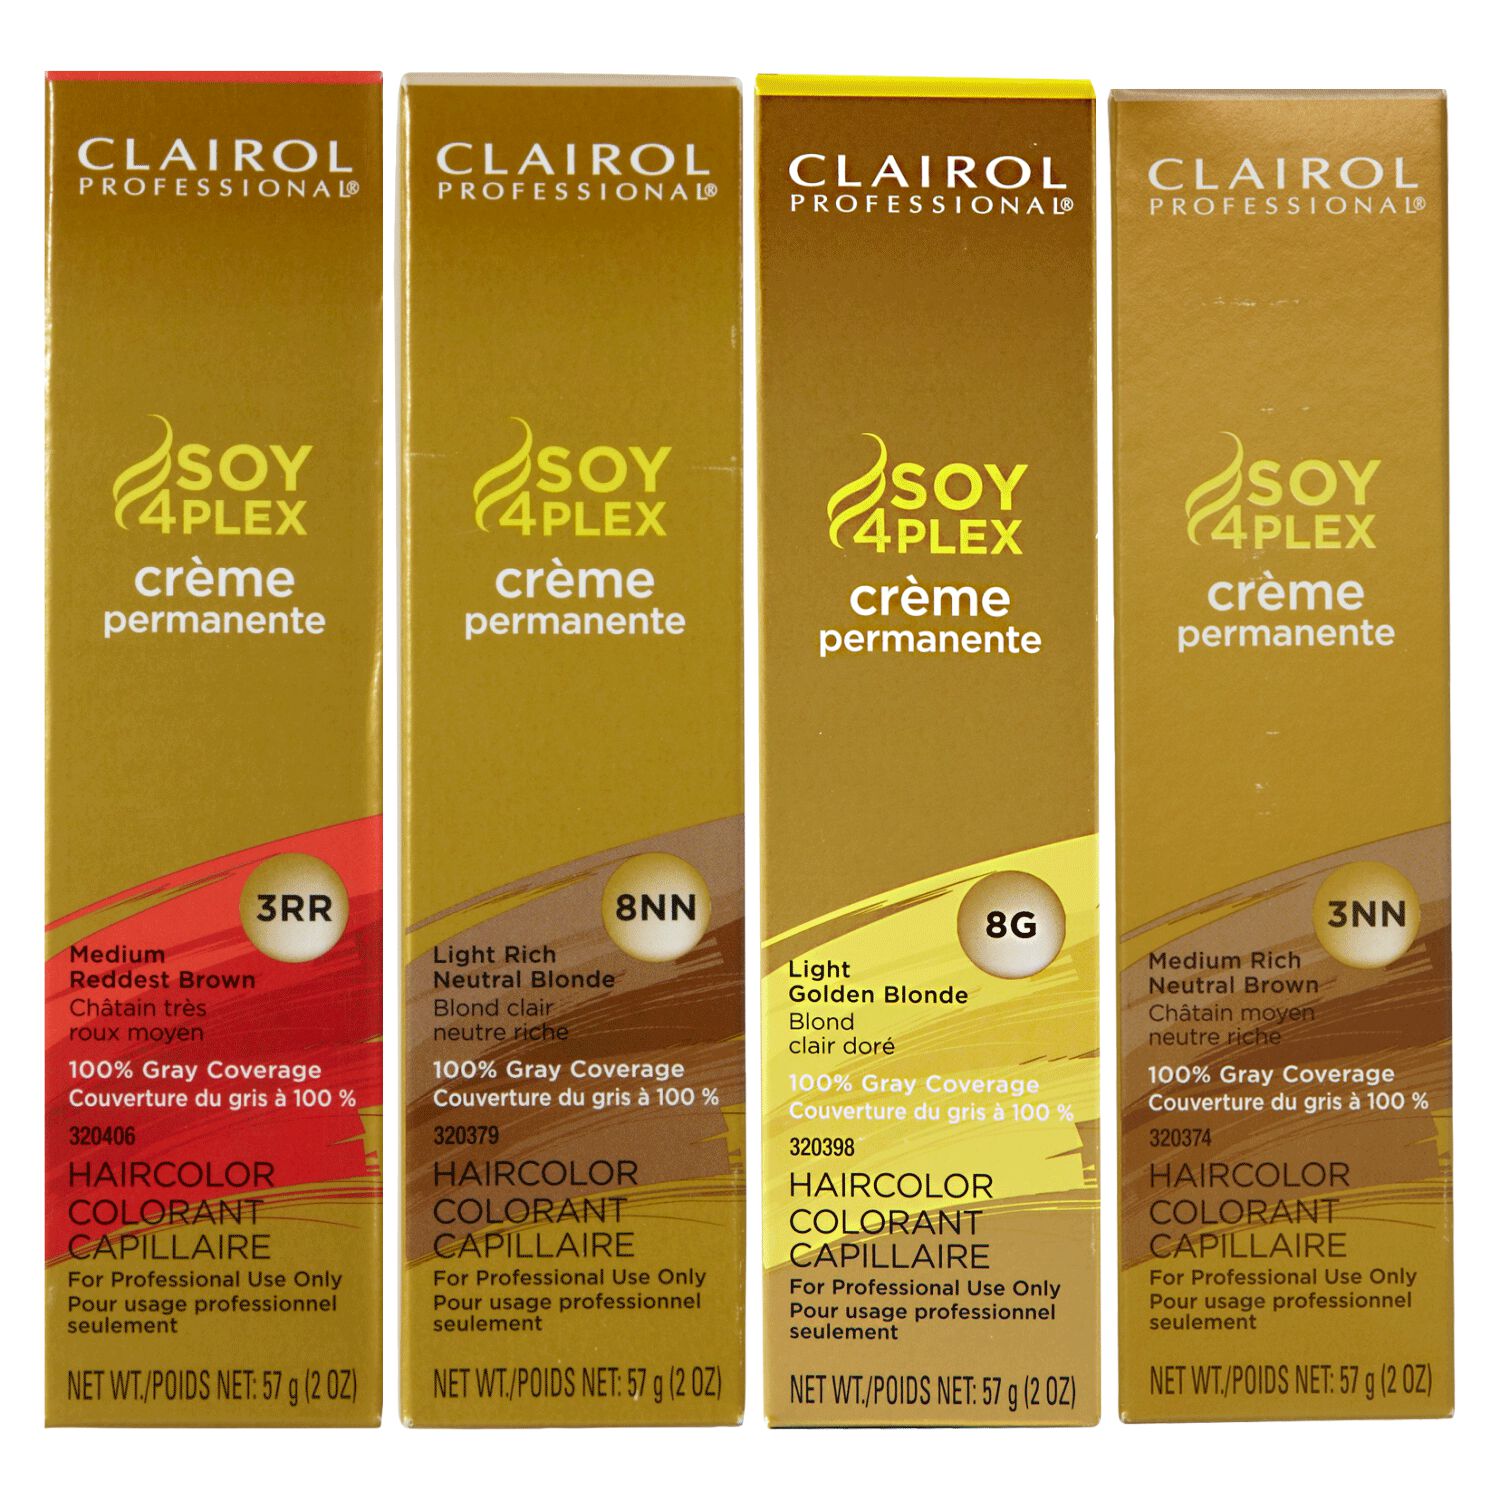 Soy4plex Premium Permanente Crème Hair Color By Clairol Professional Permanent Hair Color 